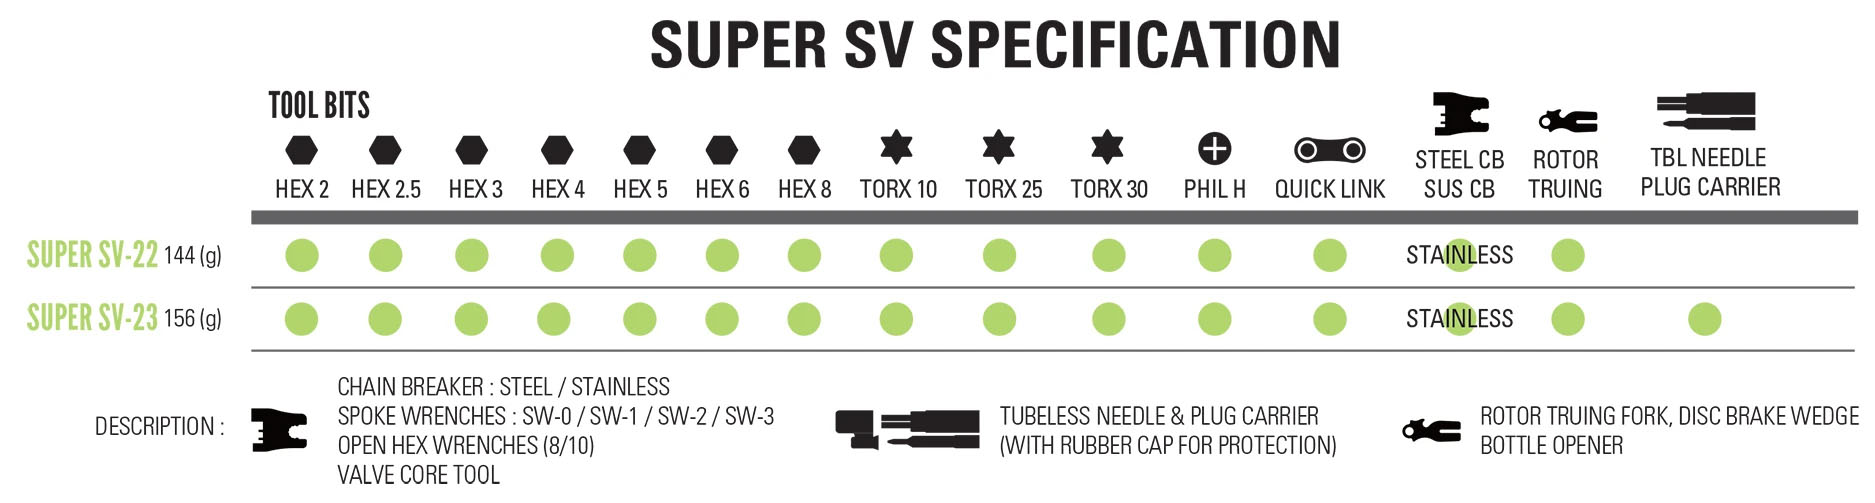 Super SV tool chart